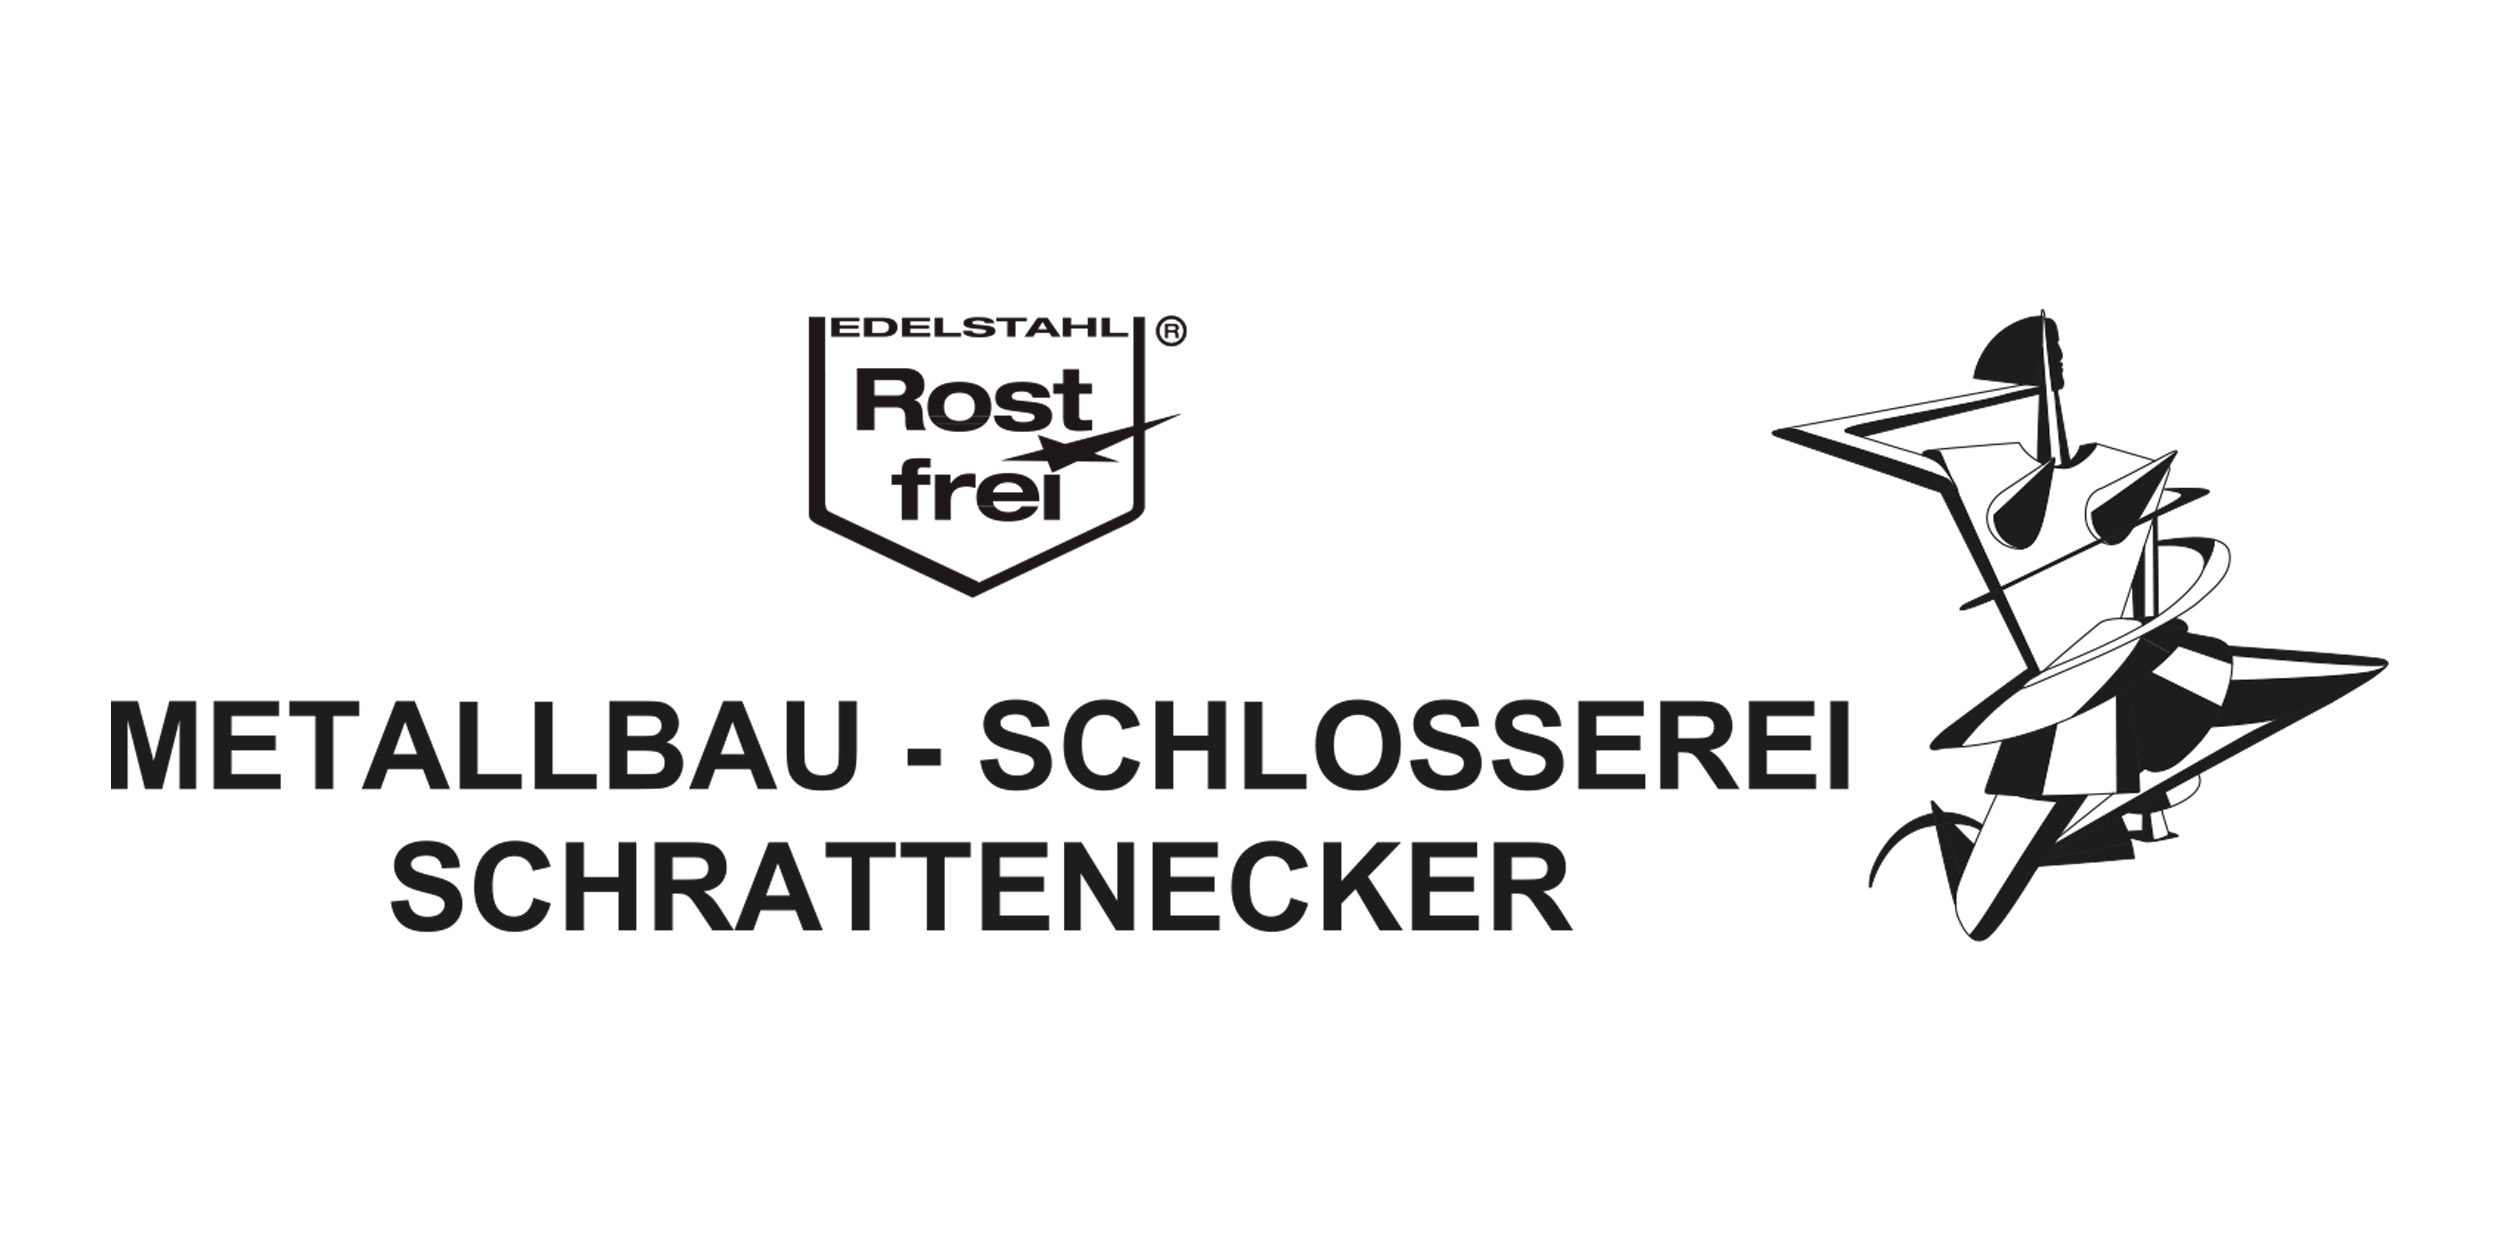 SVG Sponsor - Schlosserei Schrattenecker